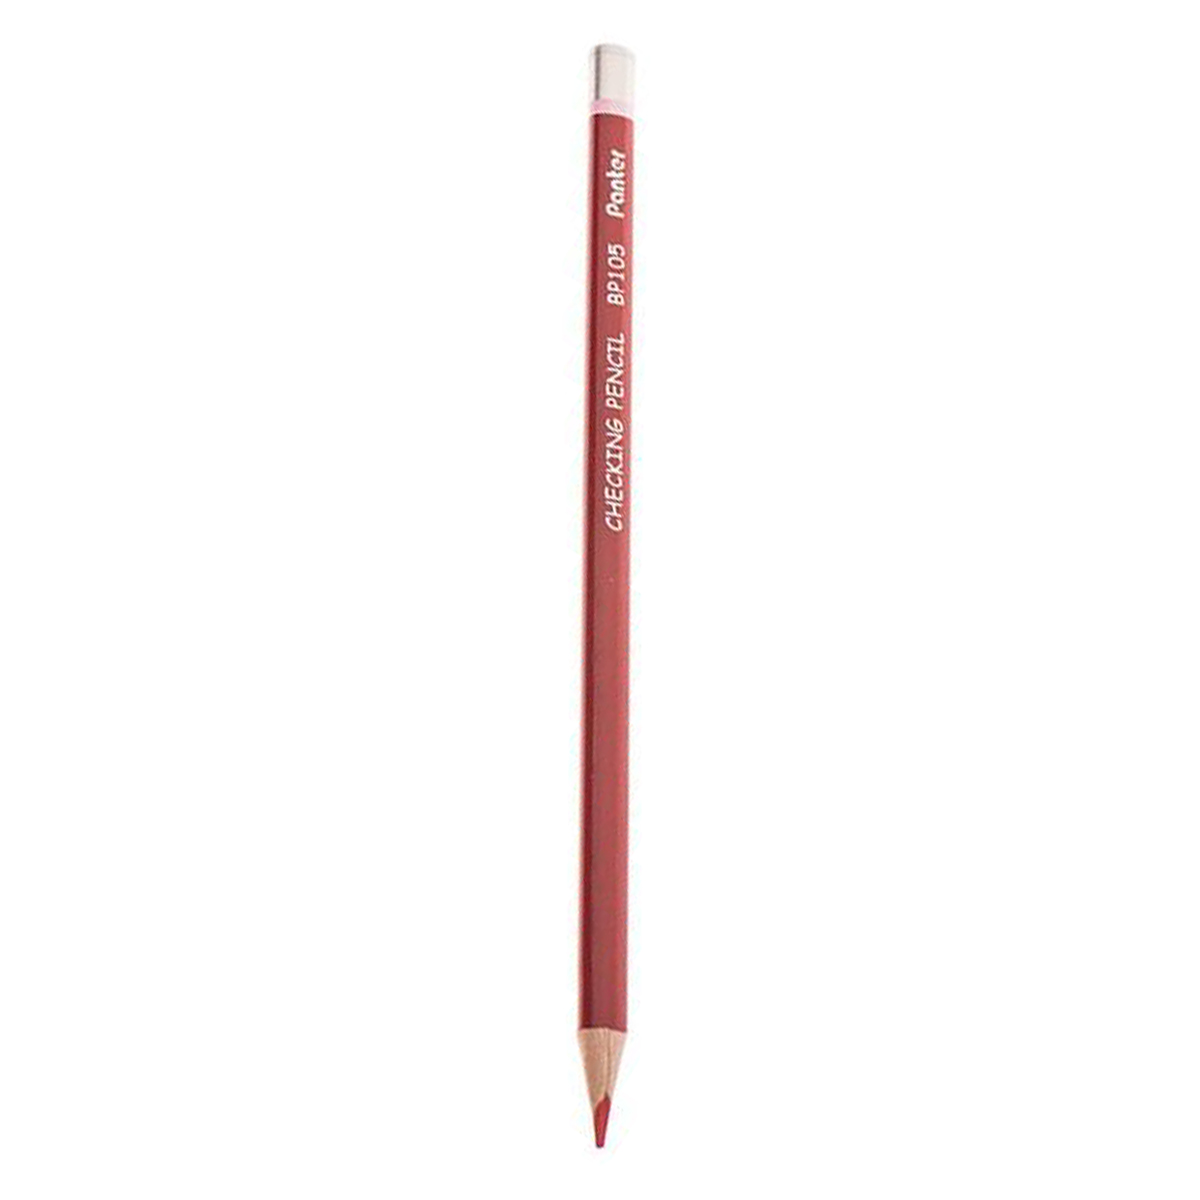  مداد قرمز پنتر مدل BP112 کد 01 